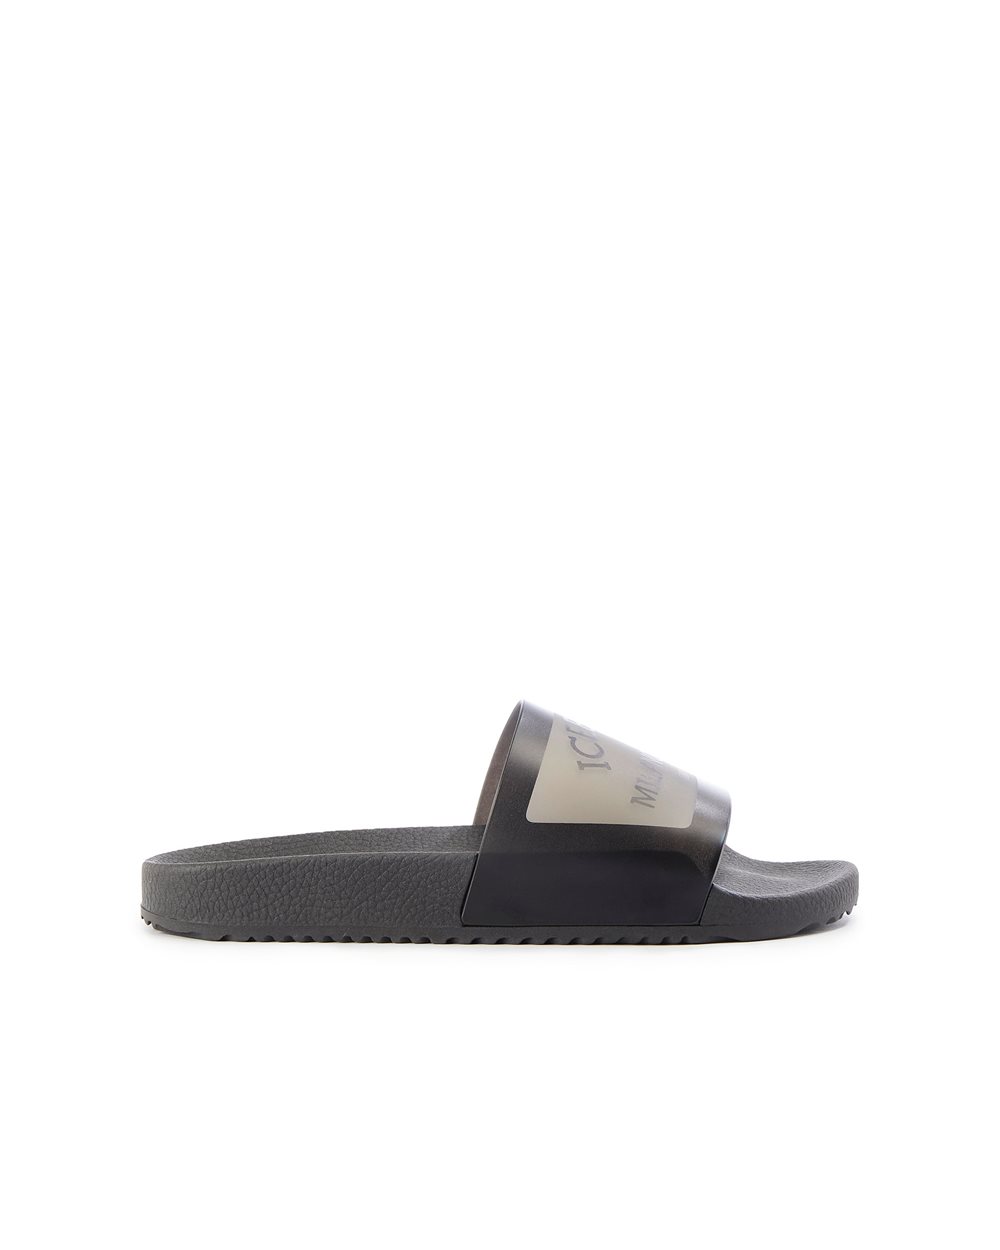 Slider sandal with logo - Iceberg - Official Website